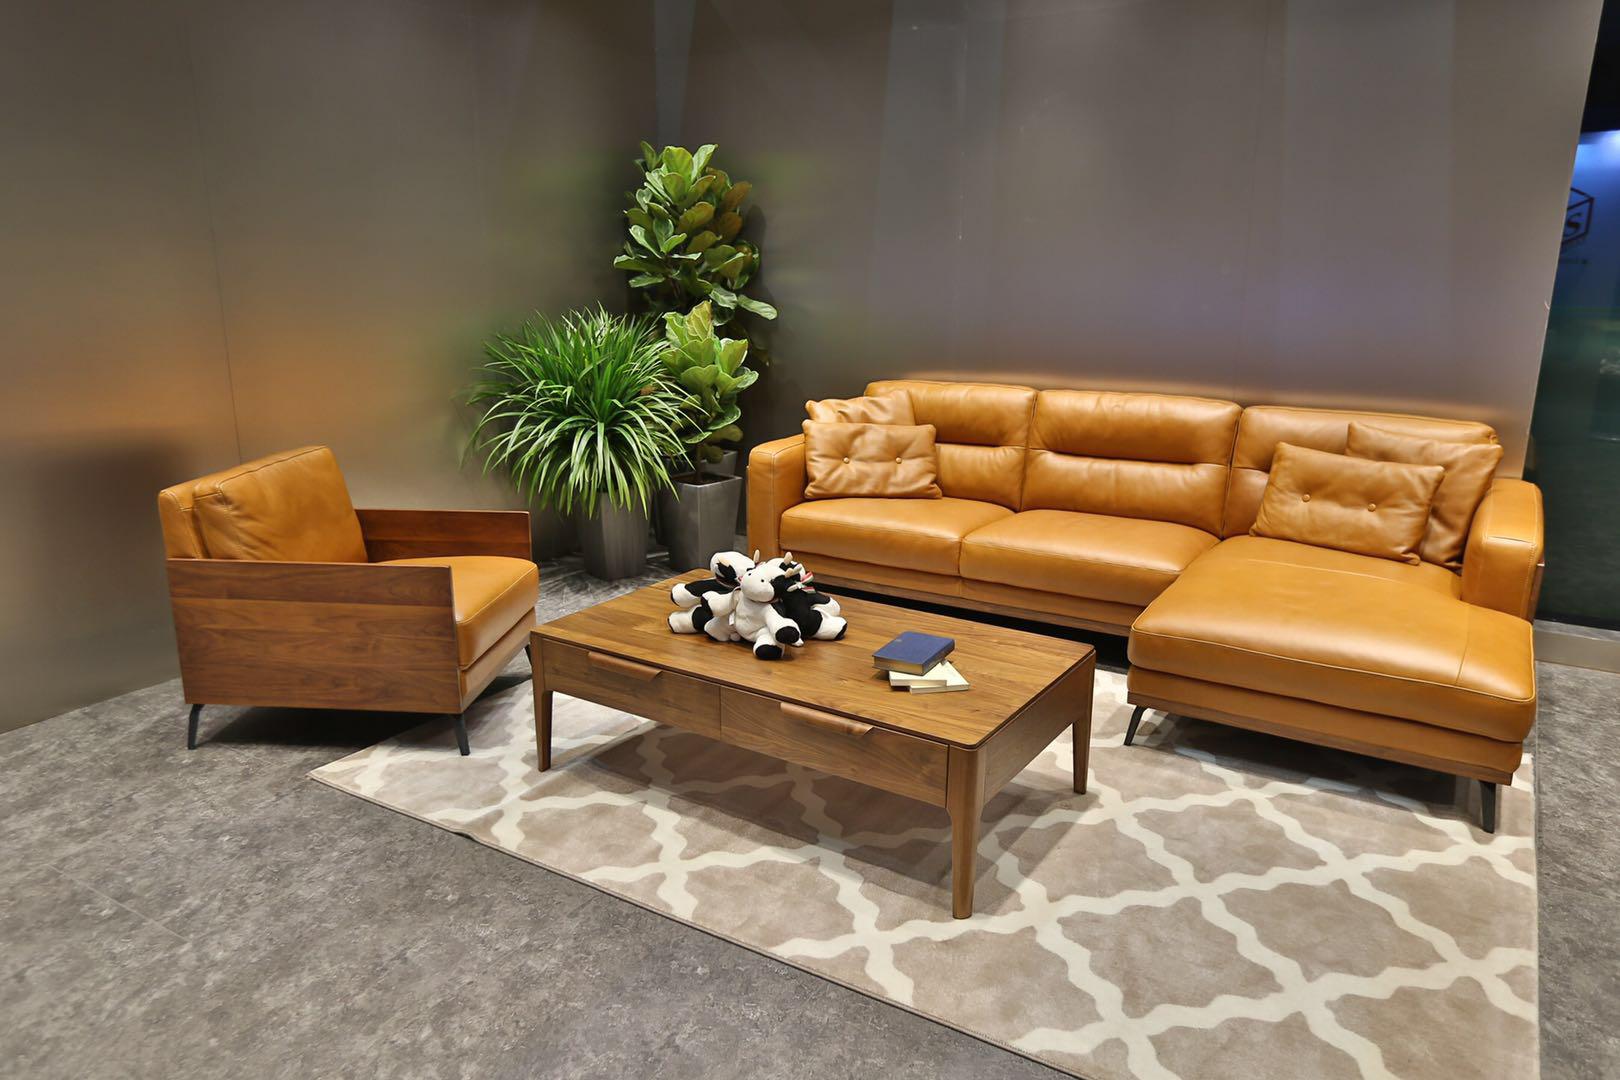 夏图m&d沙发 打造高品质客厅文化 意大利真皮